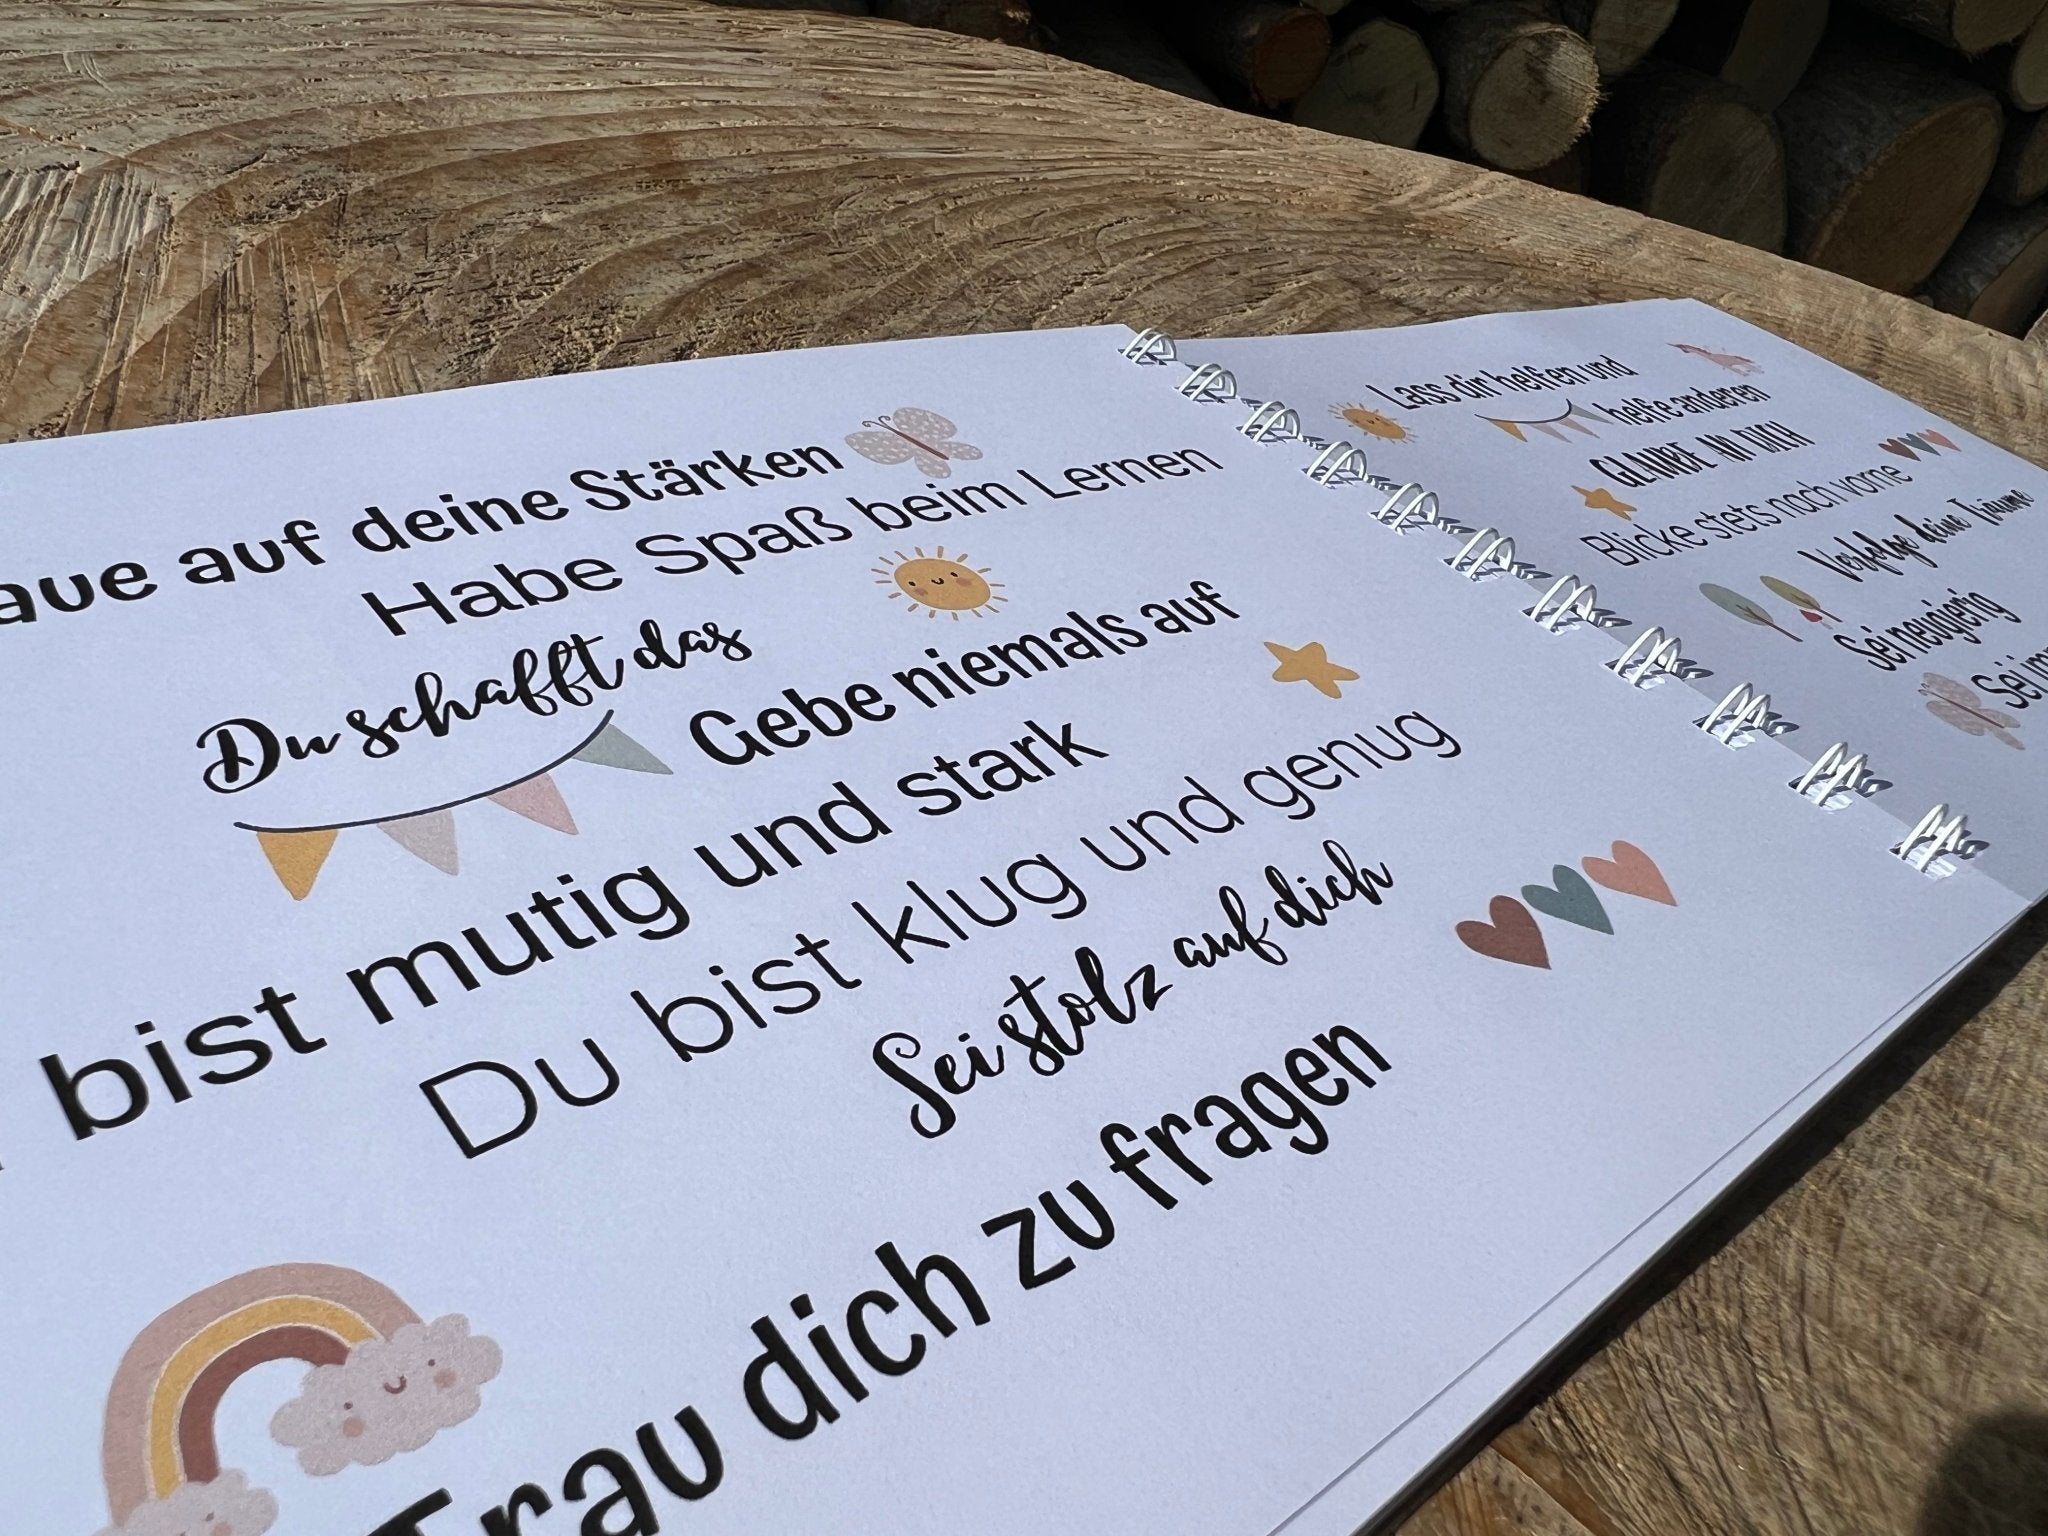 Eintragbuch "Schulkind" Einhorn - besonderlich.de -Affirmationen Einschulung